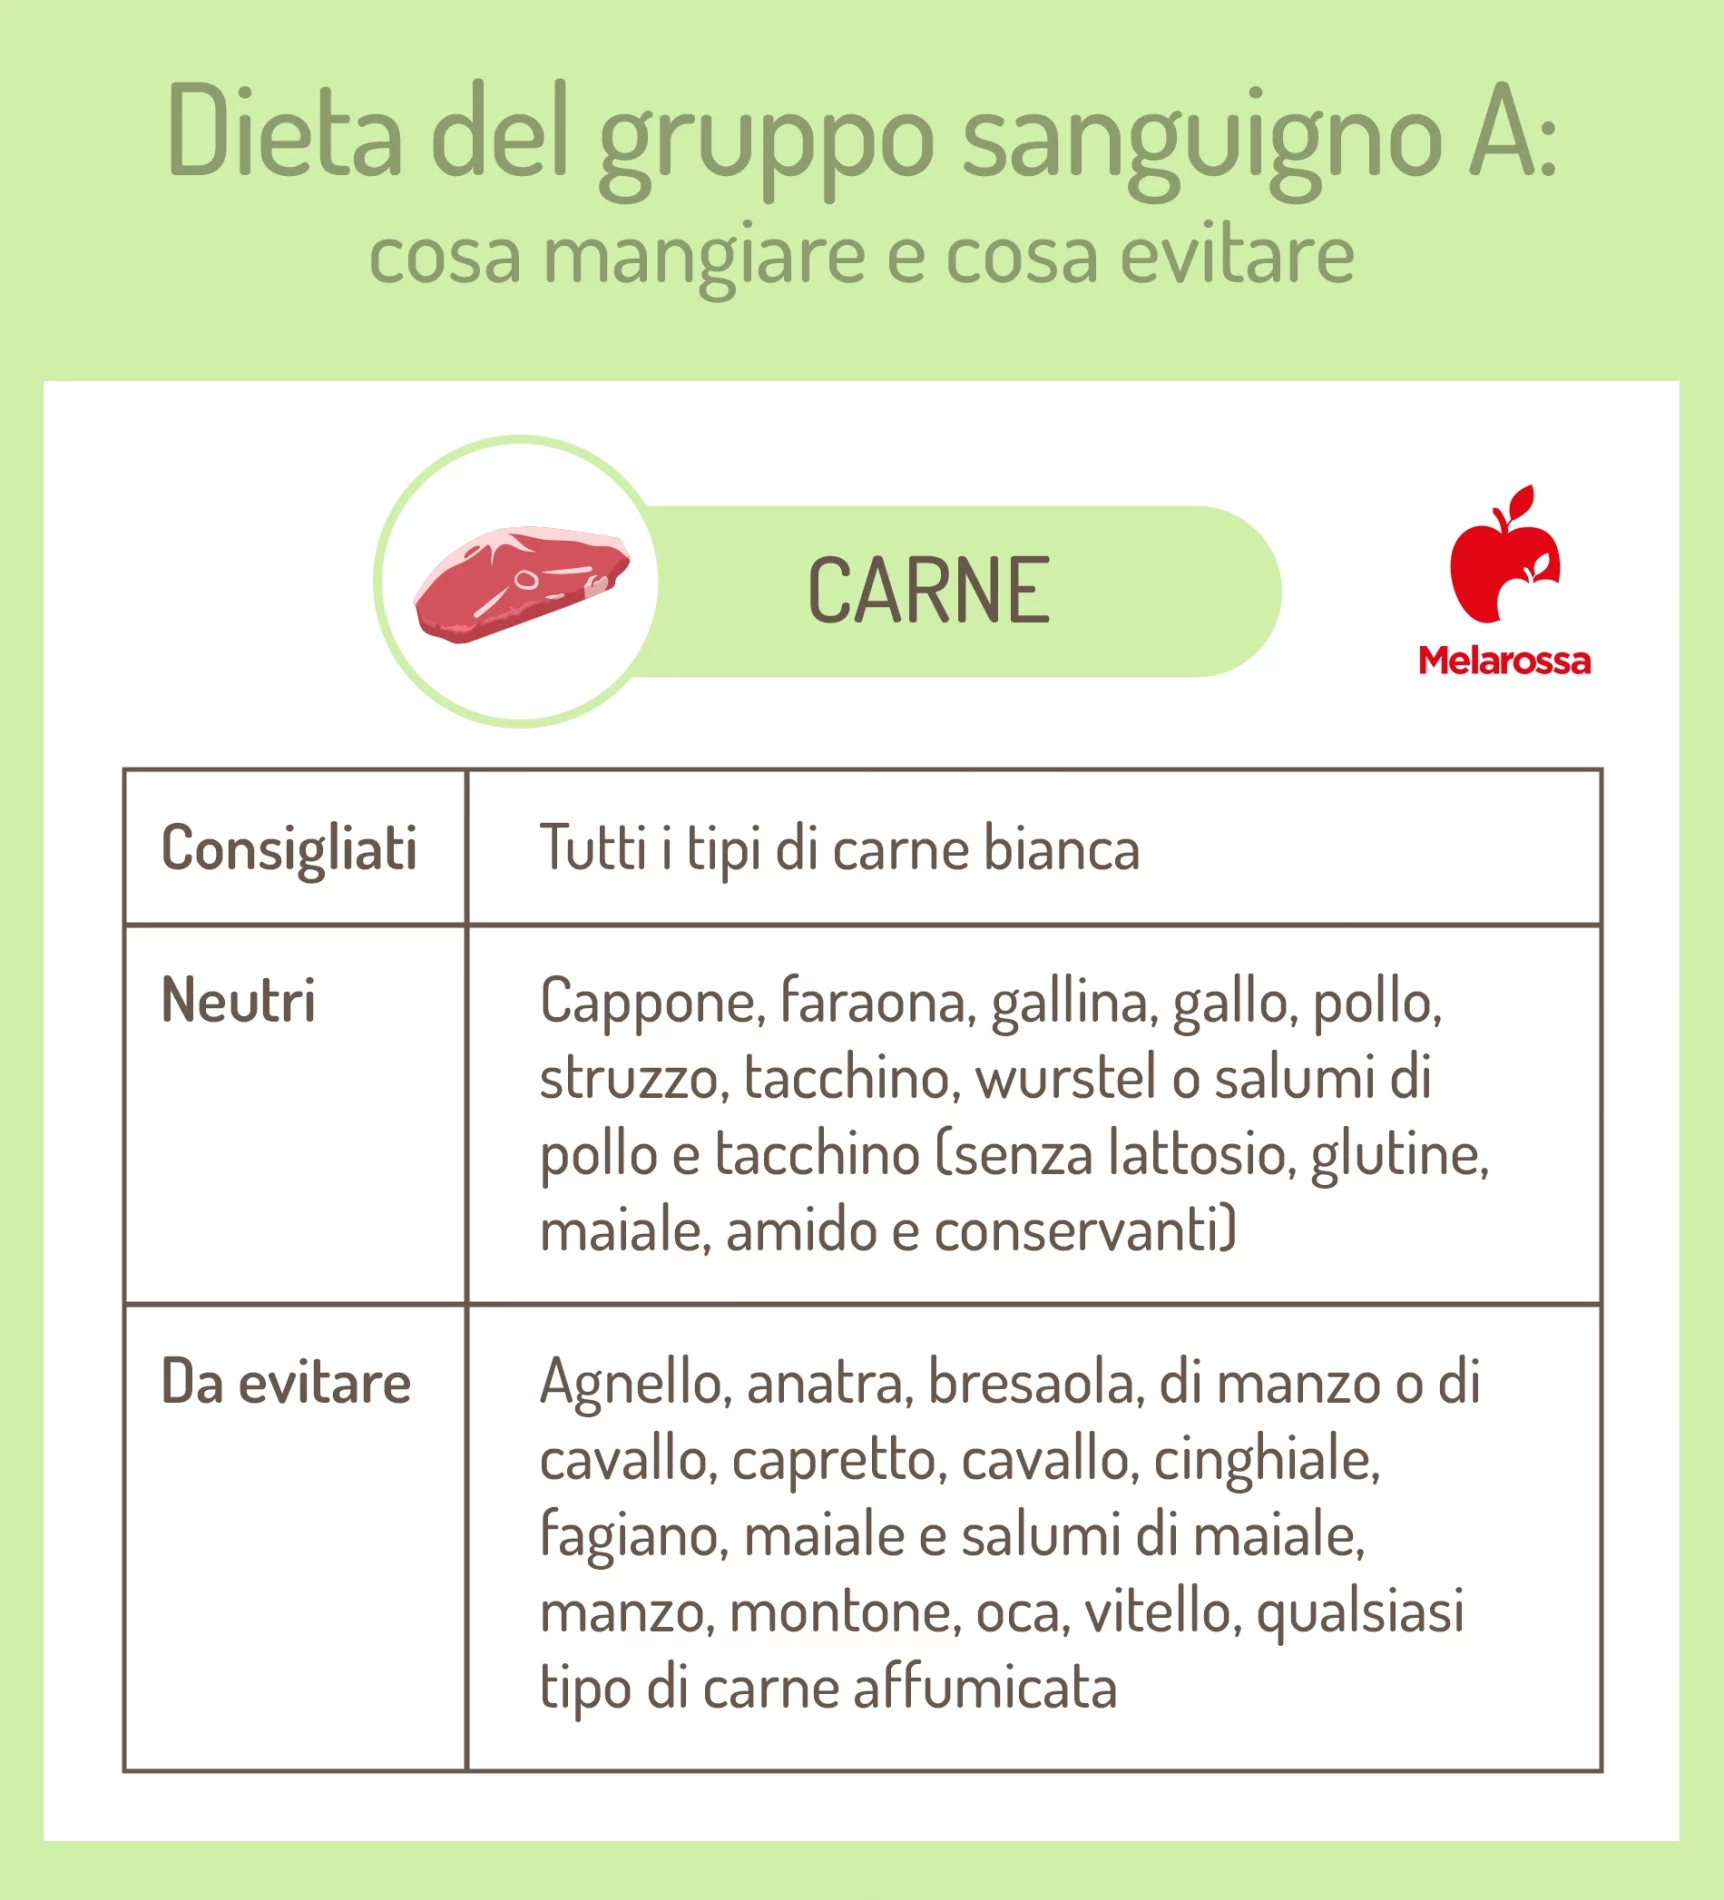 dieta gruppo sanguigno A: carne